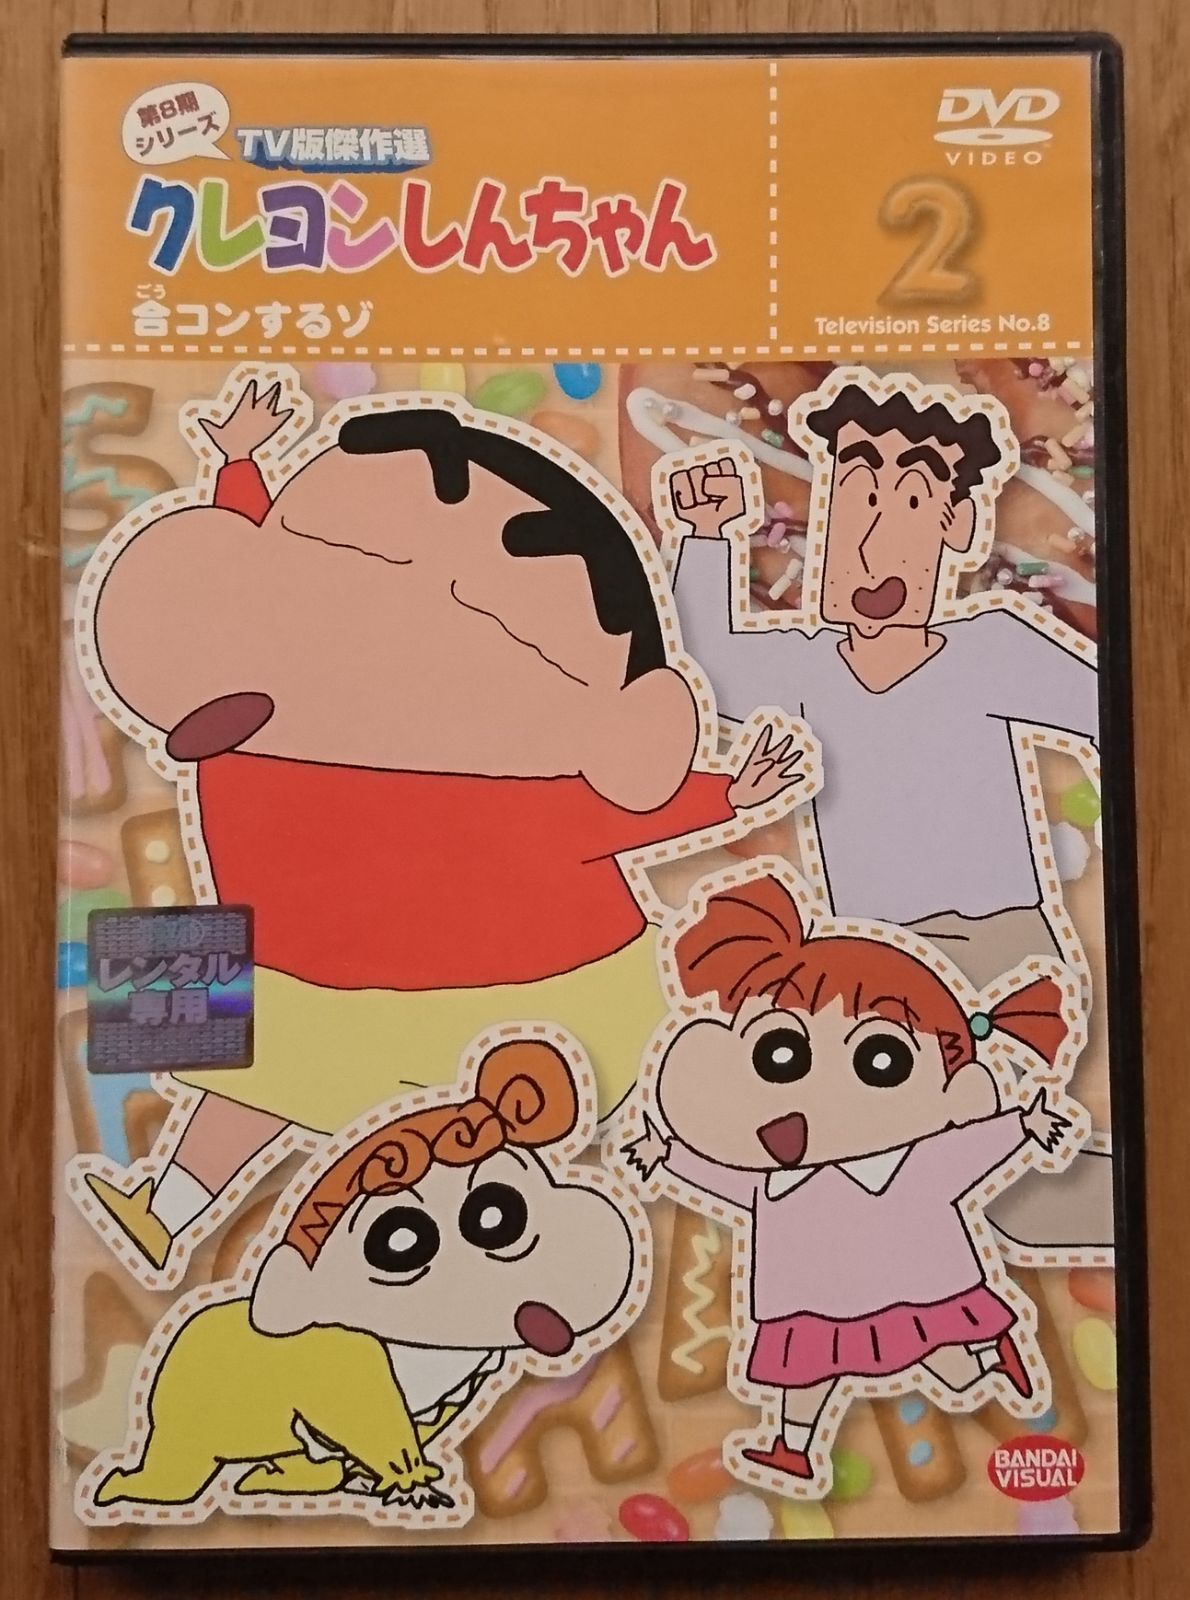 レンタル版DVD】クレヨンしんちゃん 第8期シリーズTV版傑作選 2 - メルカリ